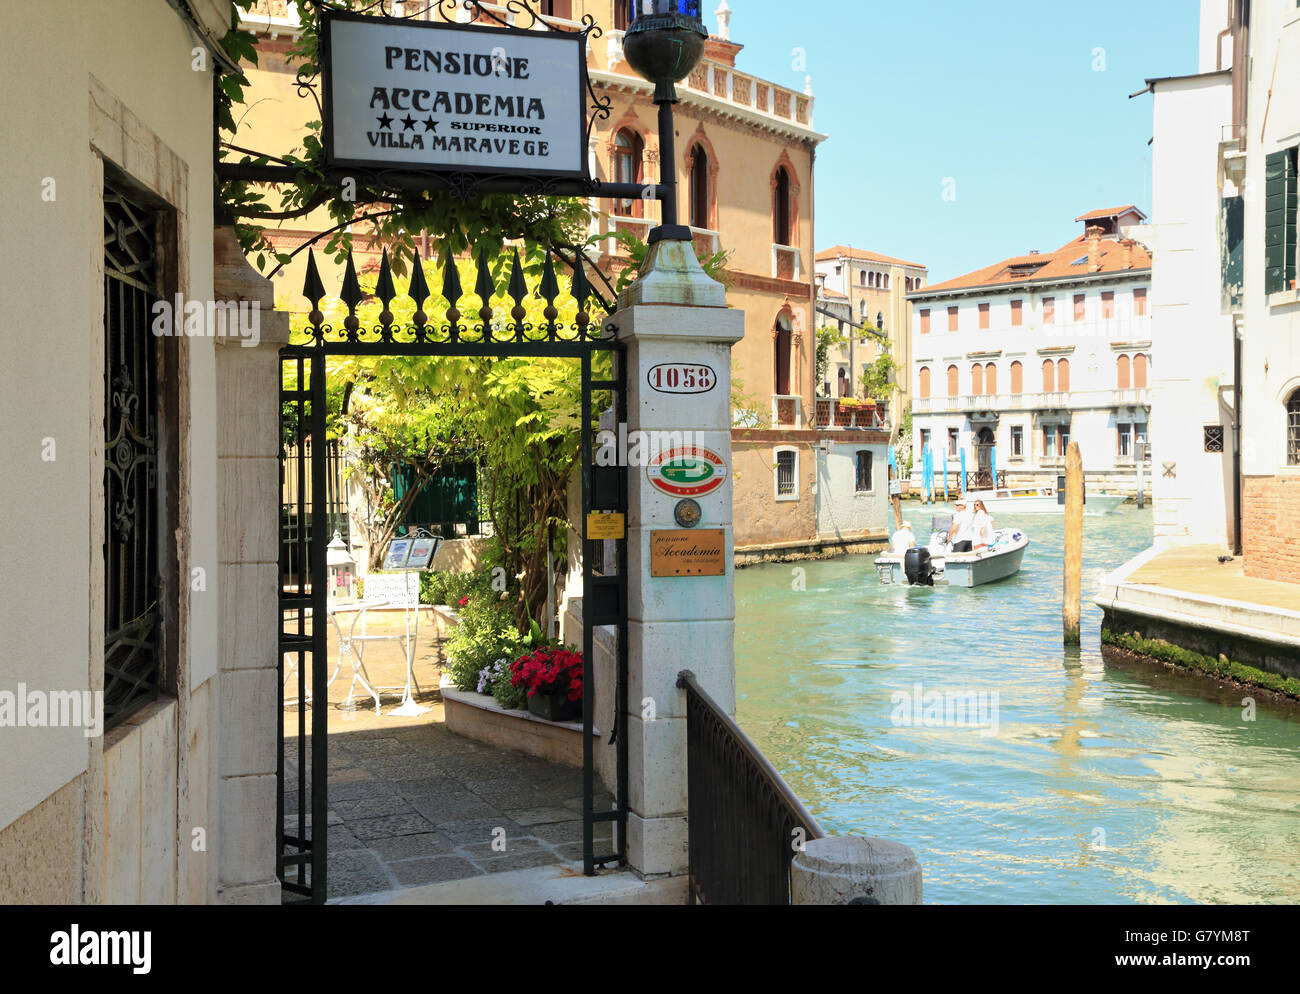 Pensione Accademia Villa Maravege Venecia Foto de stock